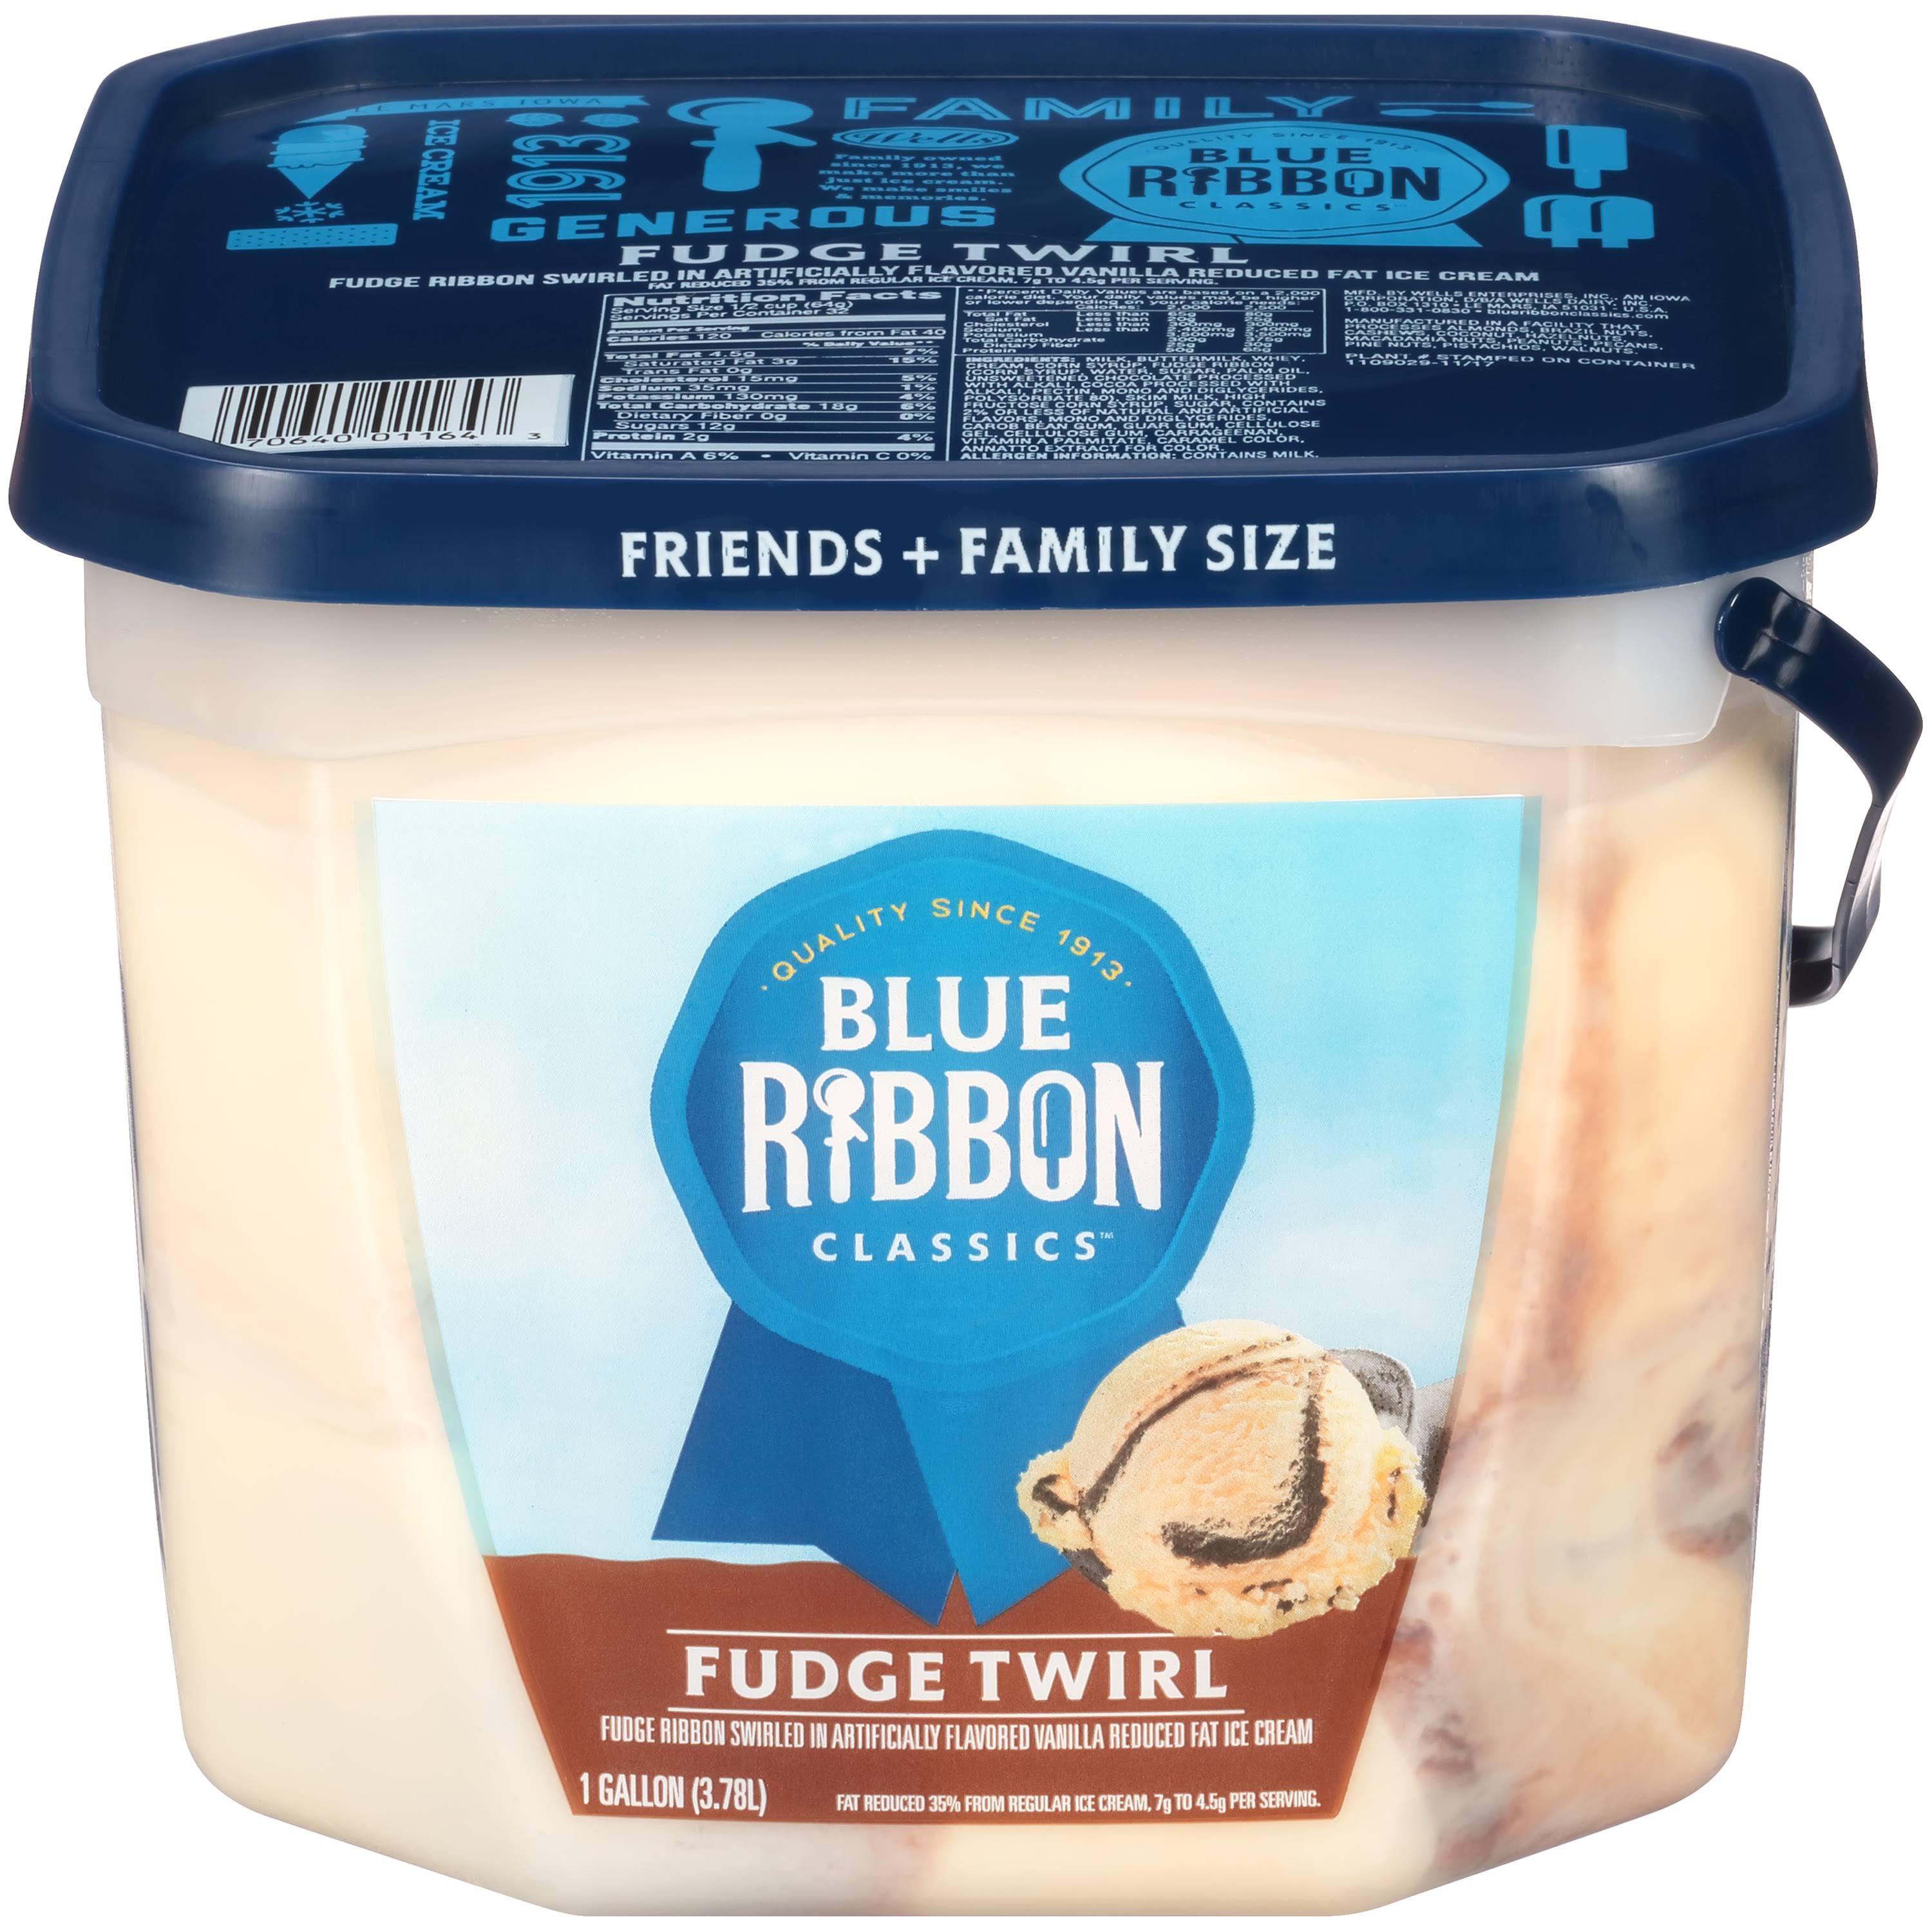 Blue Ribbon Classics Ice Cream, Reduced Fat, Fudge Twirl, Friends + Family Size - 1 gallon (3.78 l)